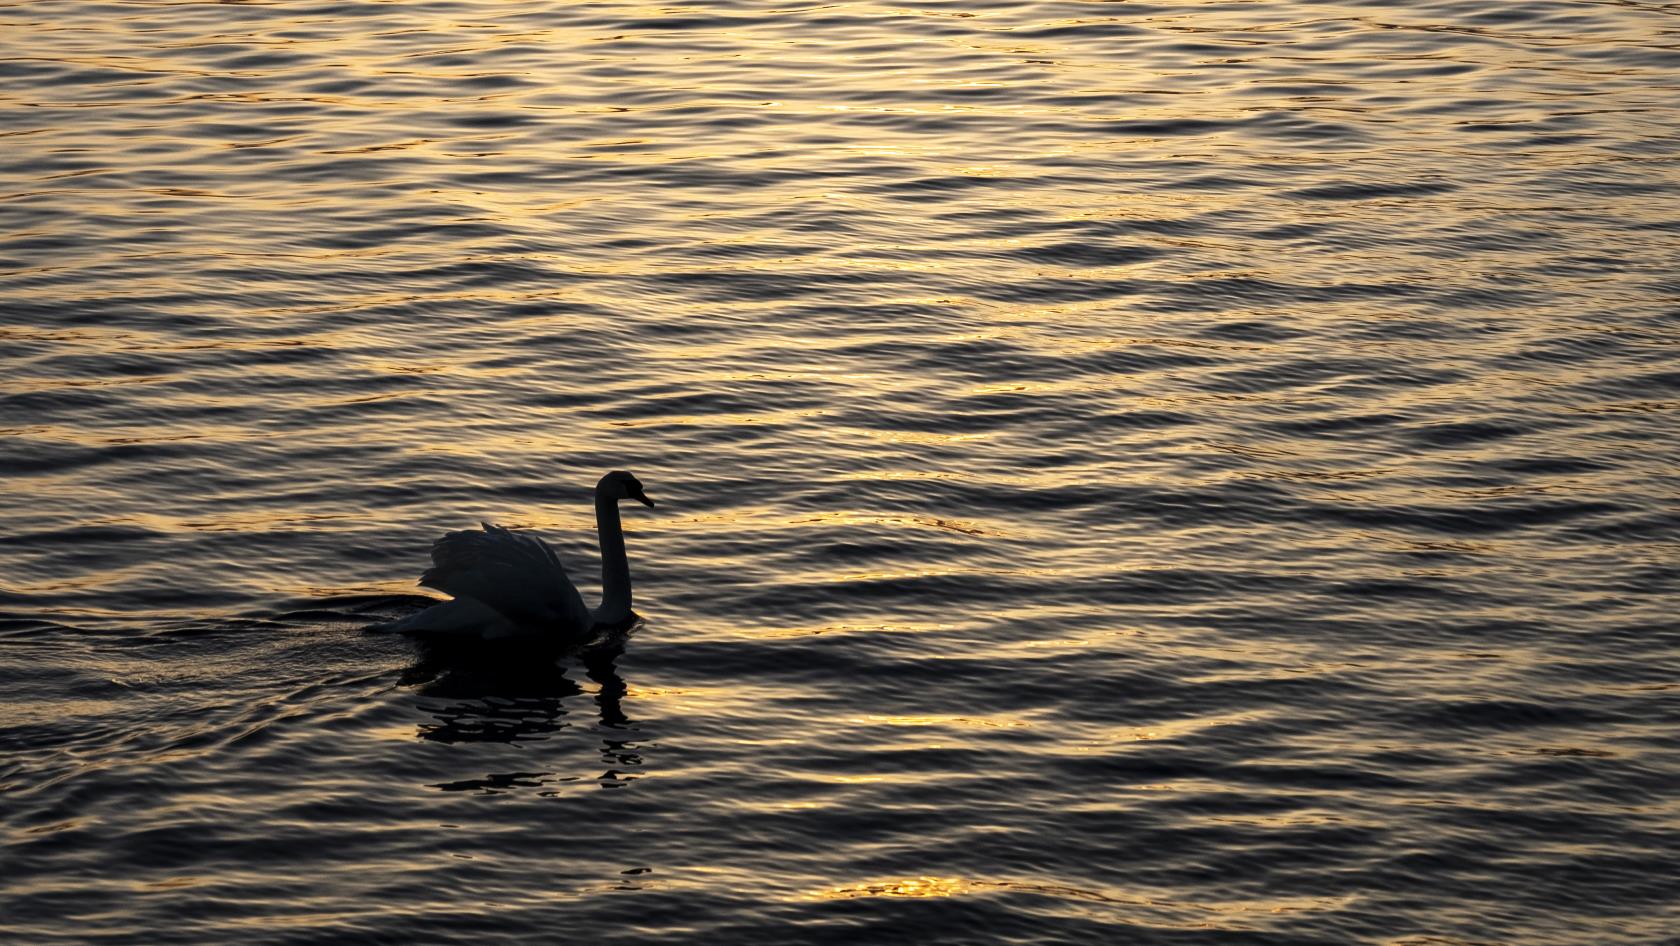 Solnedgång i skärgården. I vattnet ser man siluetten av en svan som simmar.